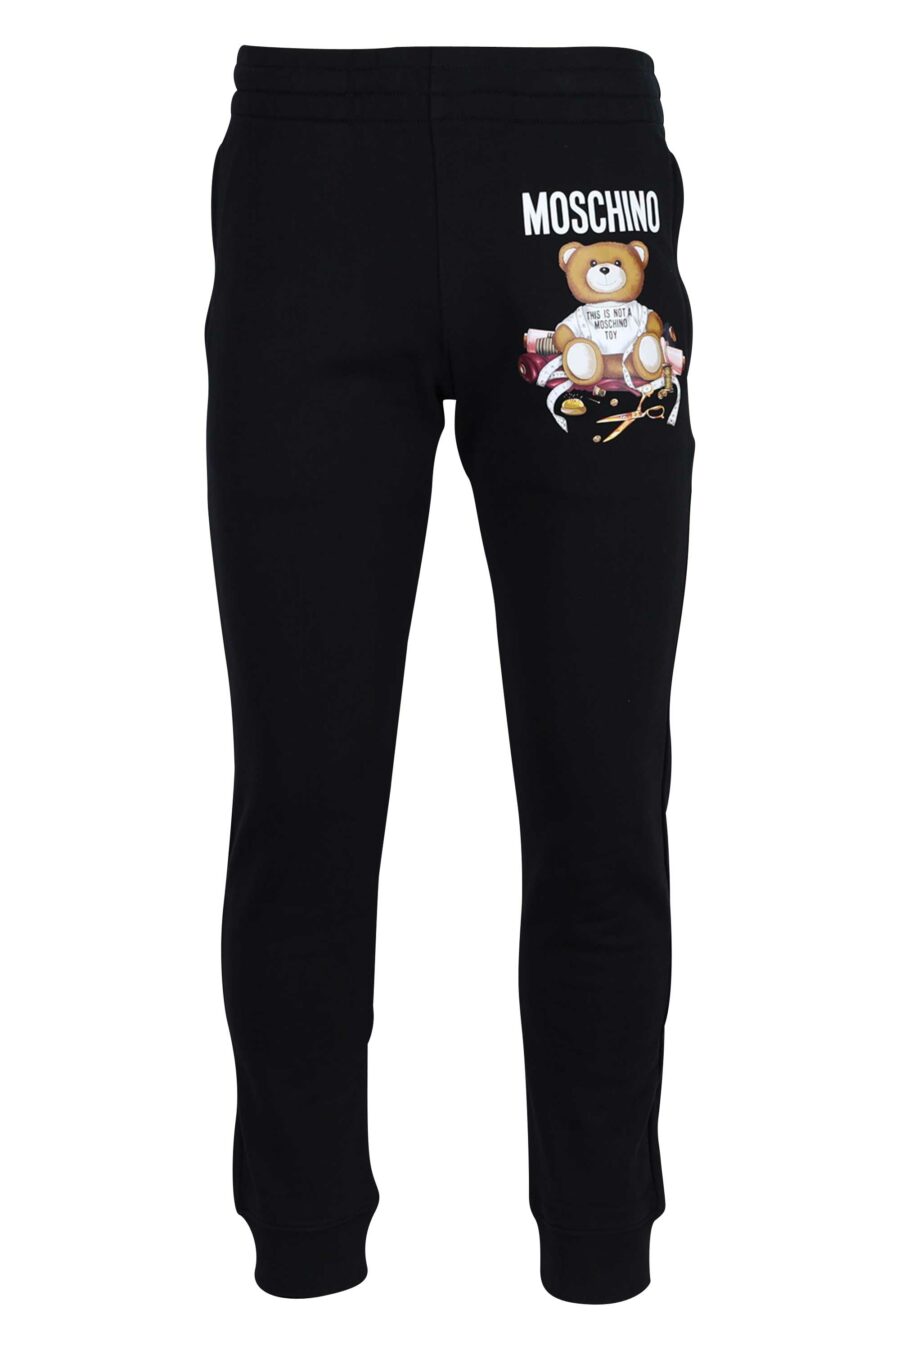 Moschino - Pantalón de chándal negro con logo teddy sastre - BLS Fashion